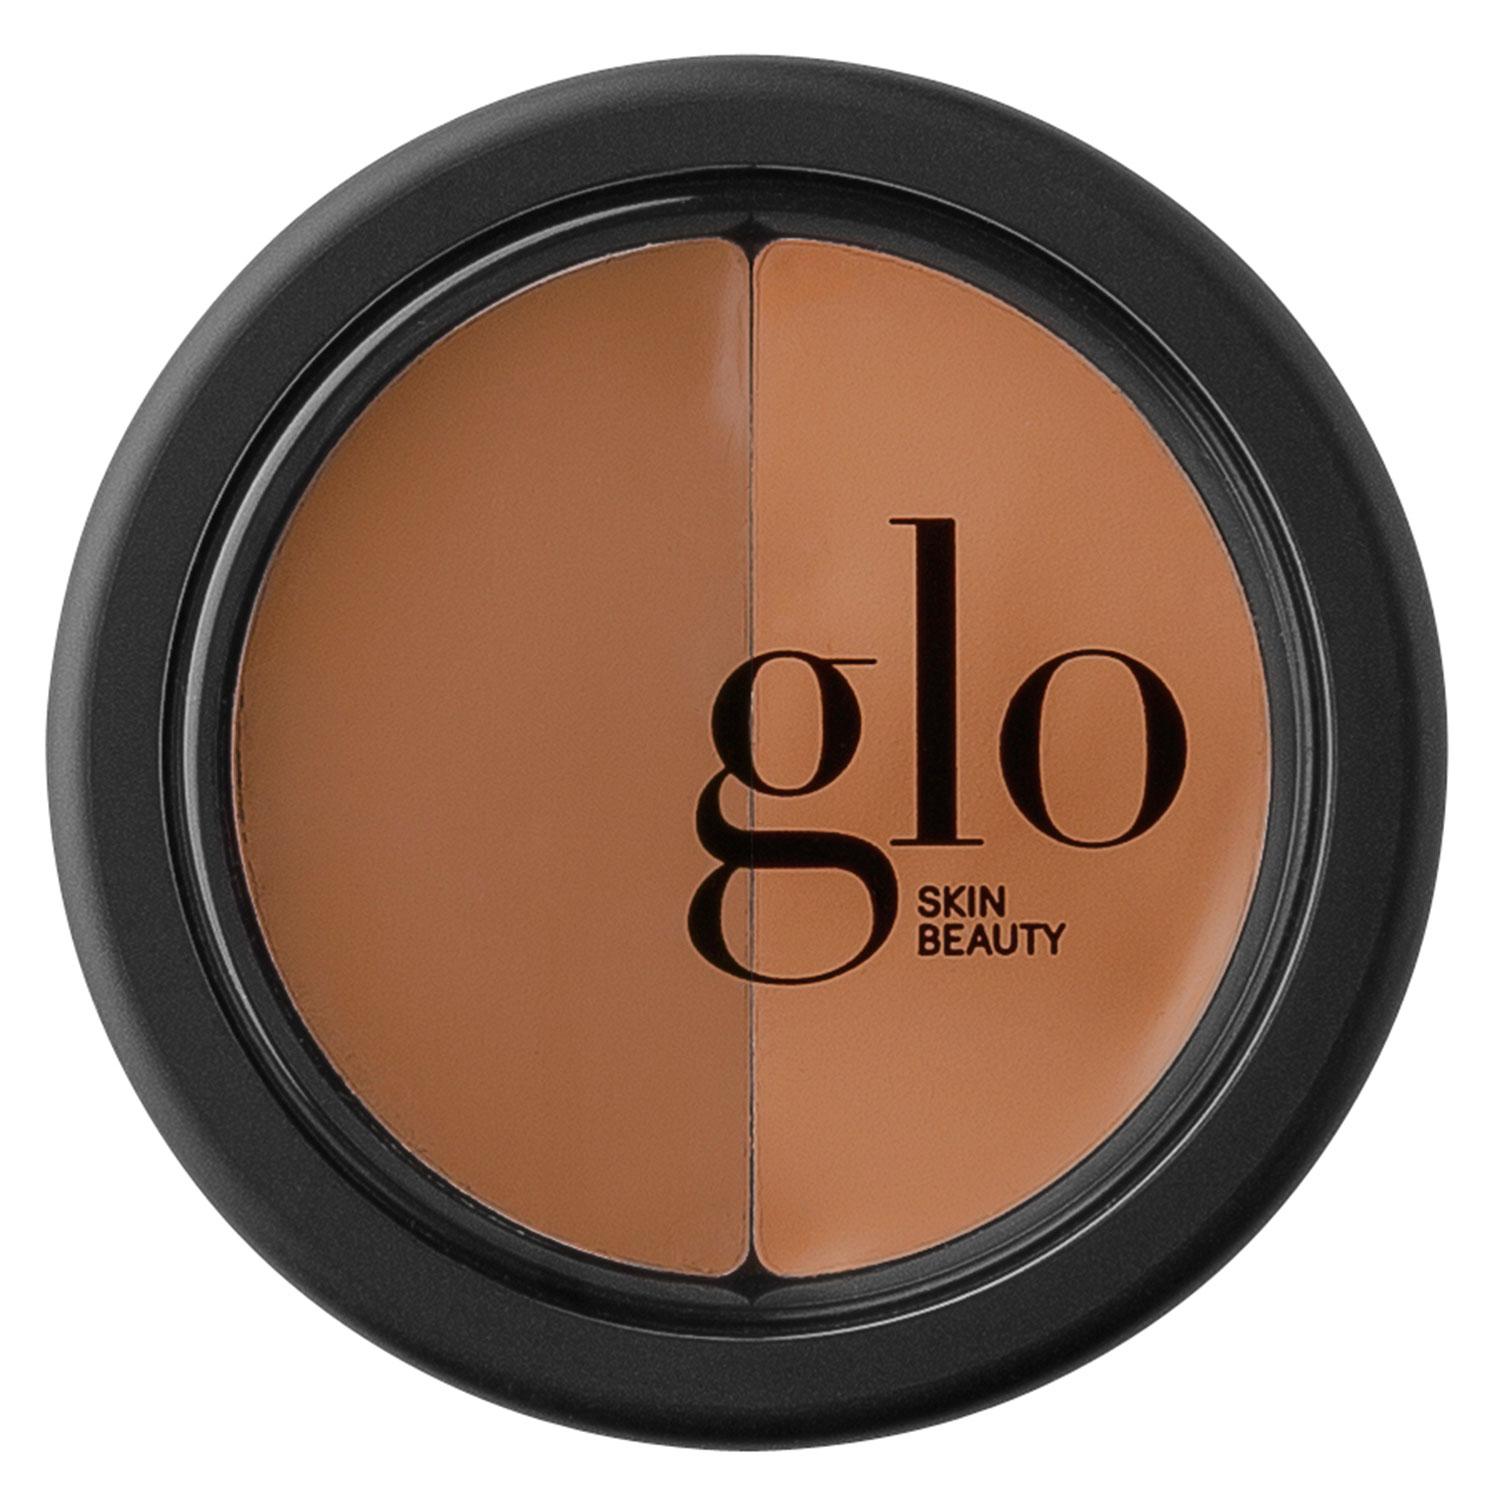 Glo Skin Beauty Concealer - Under Eye Concealer Honey